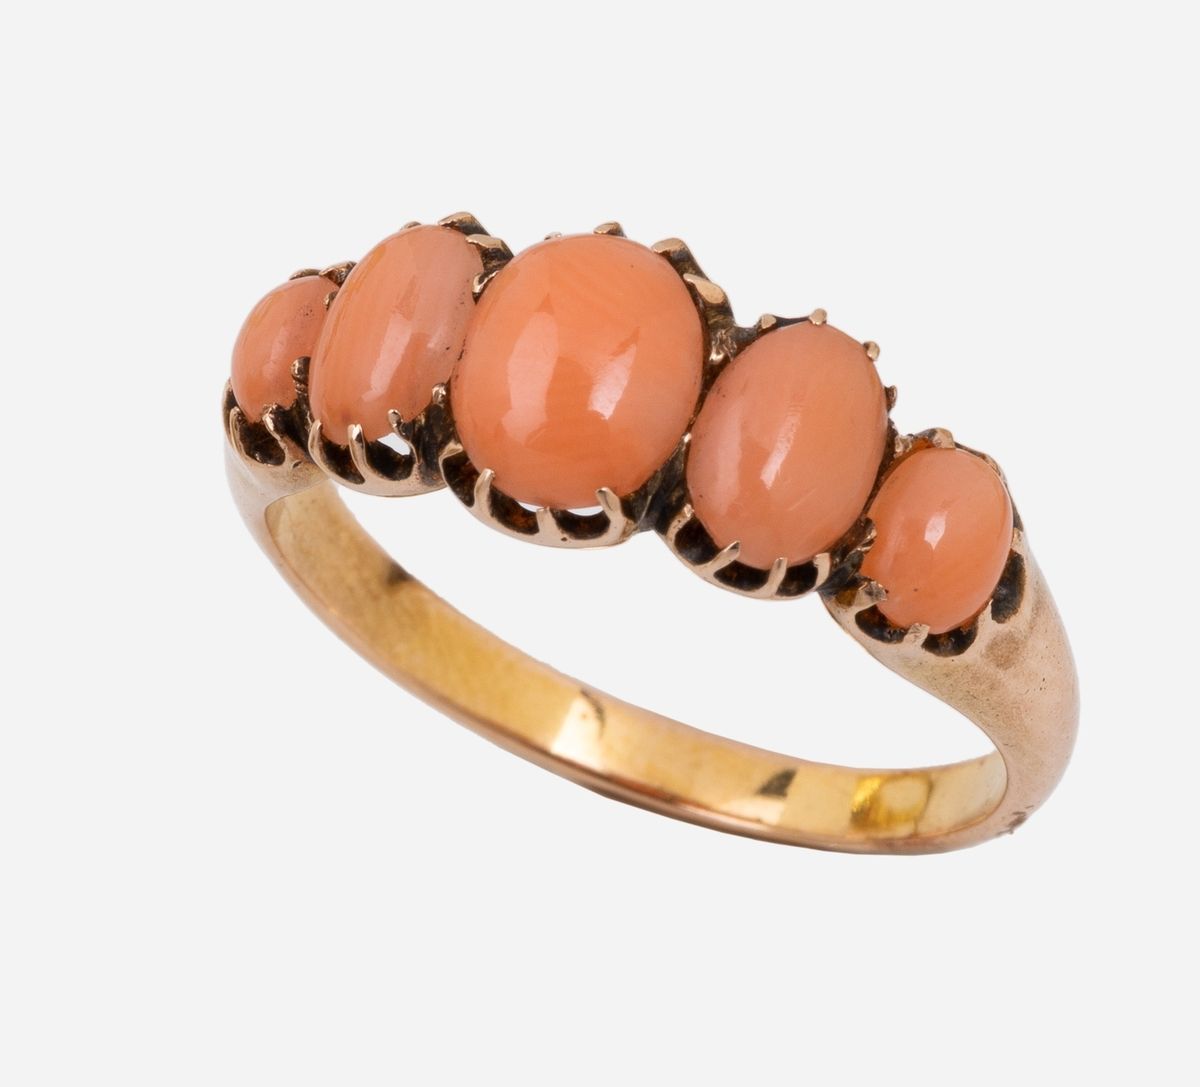 Null 14k（585千分之一）玫瑰金戒指，镶嵌着非常美丽的粉红色珊瑚凸圆形。十九世纪末的环形吊袜带。
手指大小：54
毛重：2.7 g。